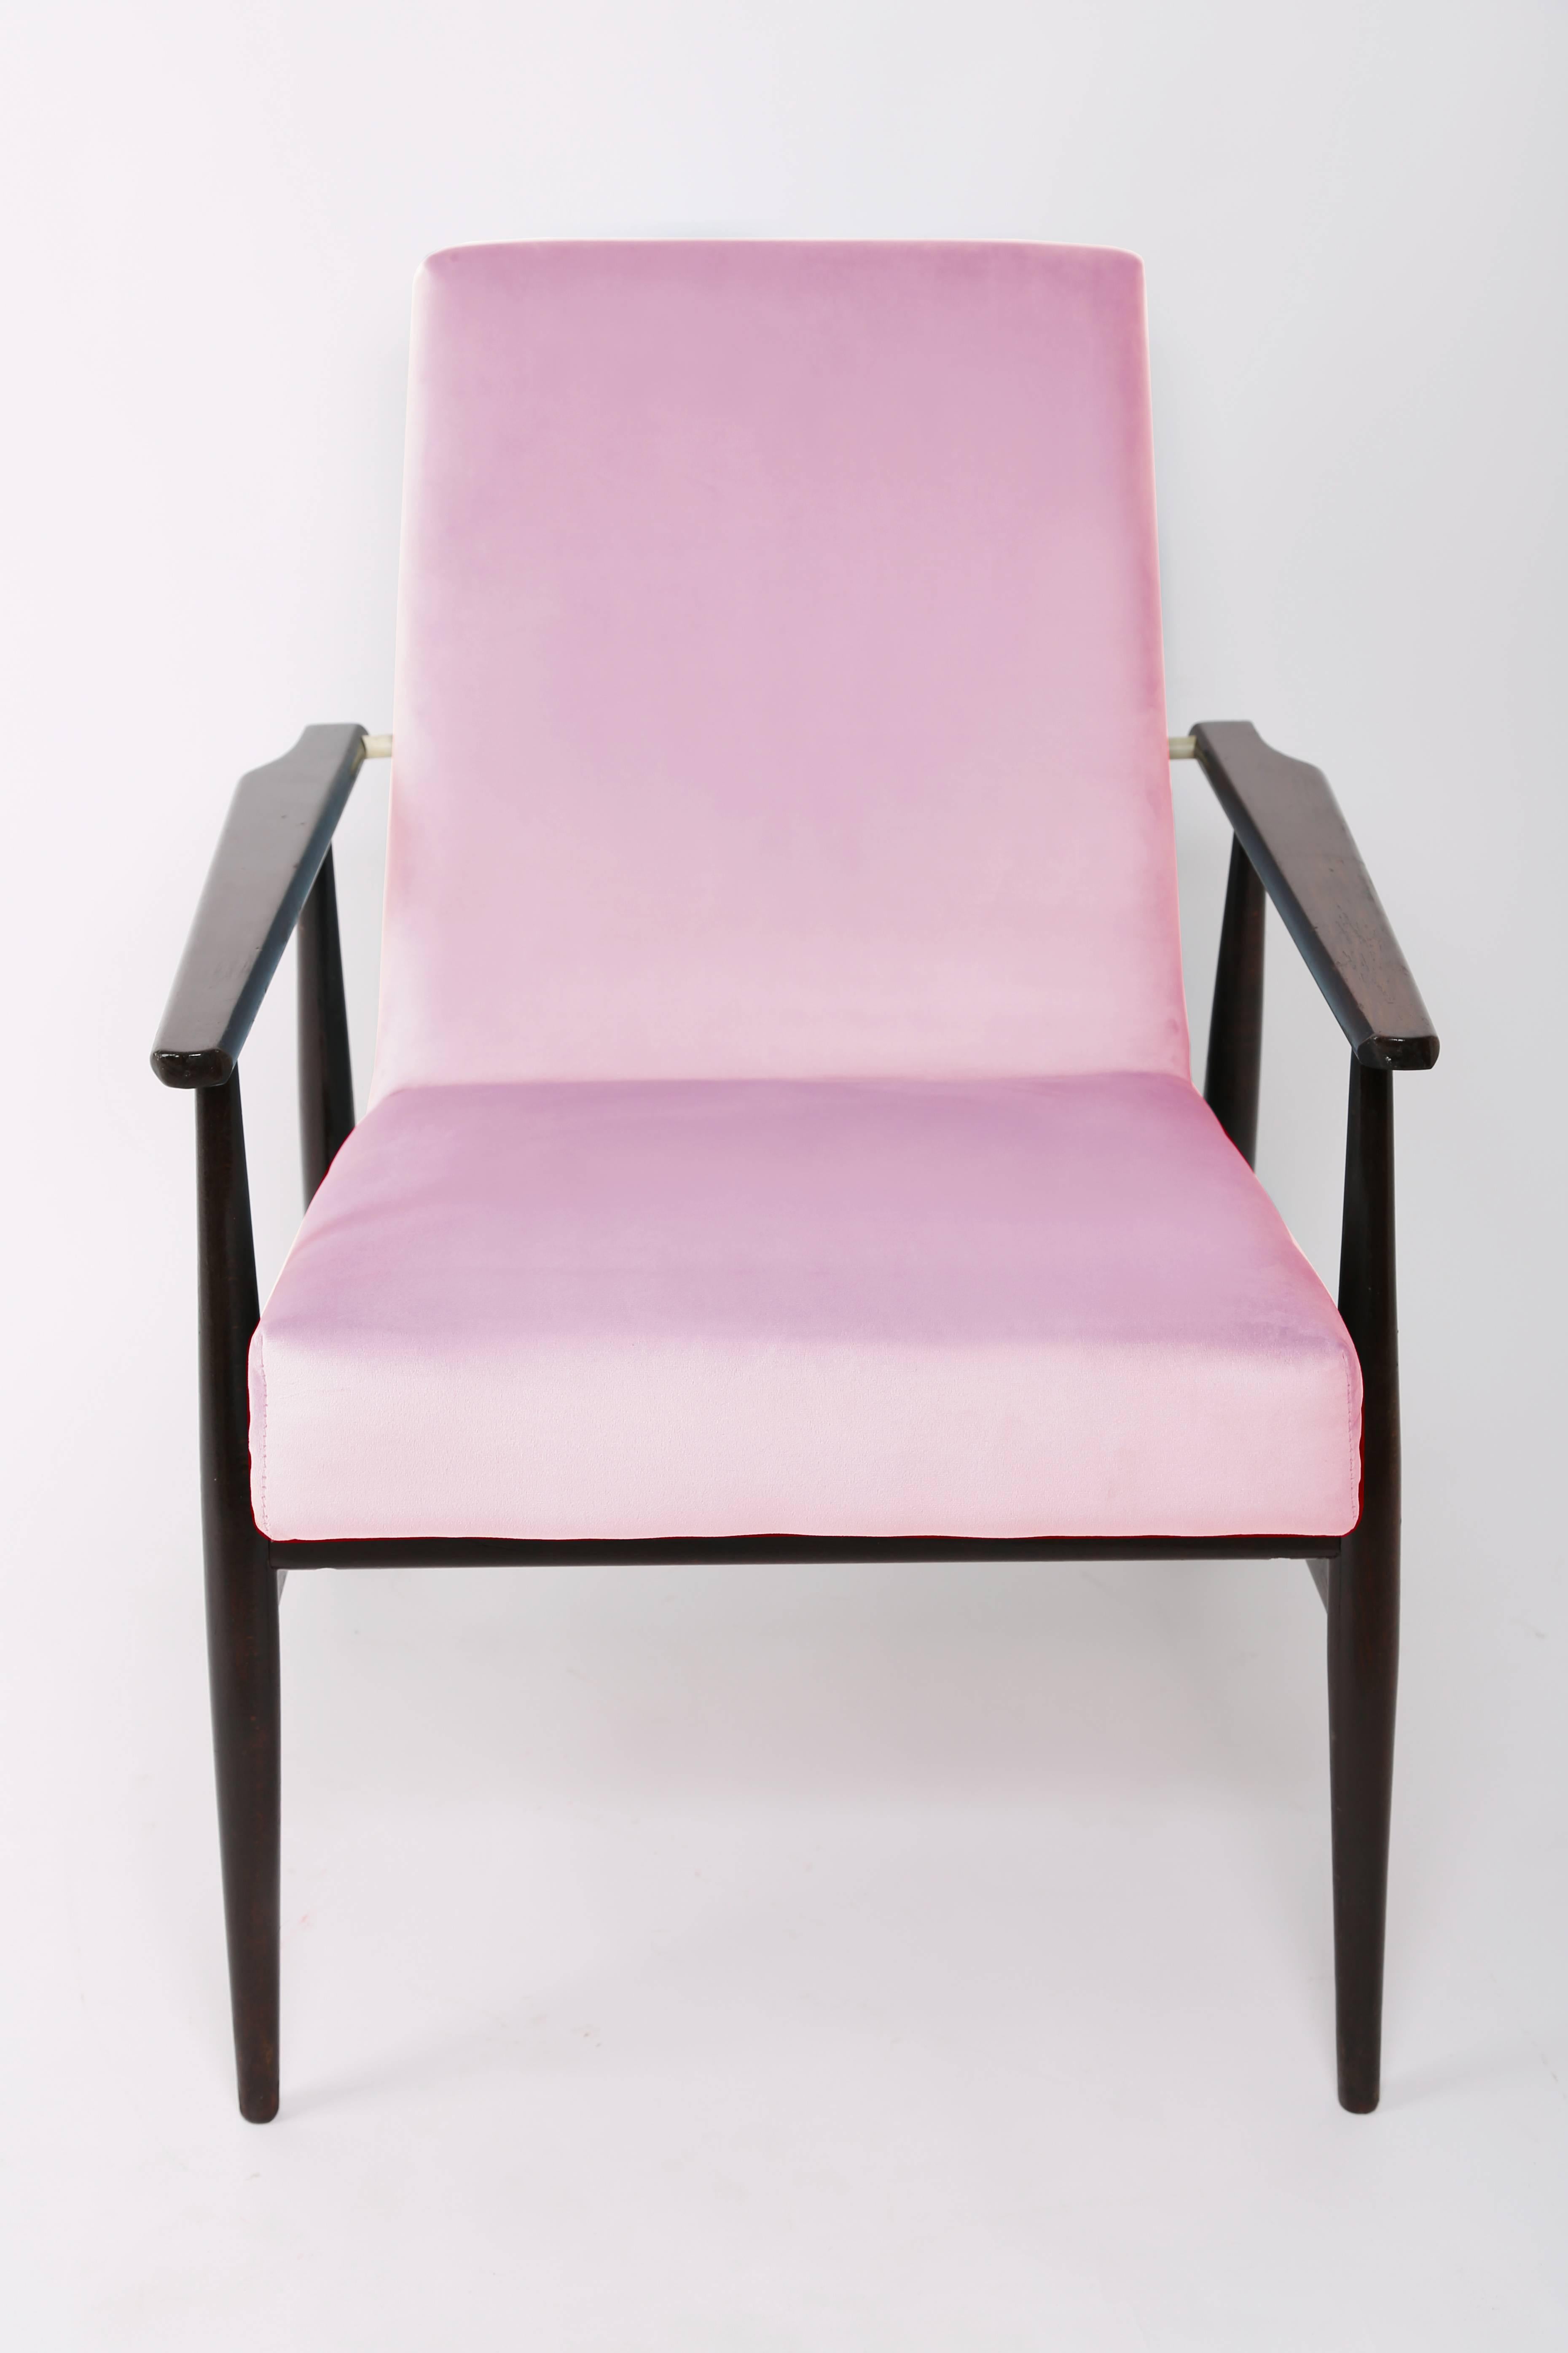 Un beau fauteuil restauré, conçu par Henryk Lis. Meubles après une rénovation complète de la menuiserie et de la tapisserie. Le tissu, qui recouvre un dossier et une assise, est un revêtement en velours de haute qualité. Le fauteuil sera parfait